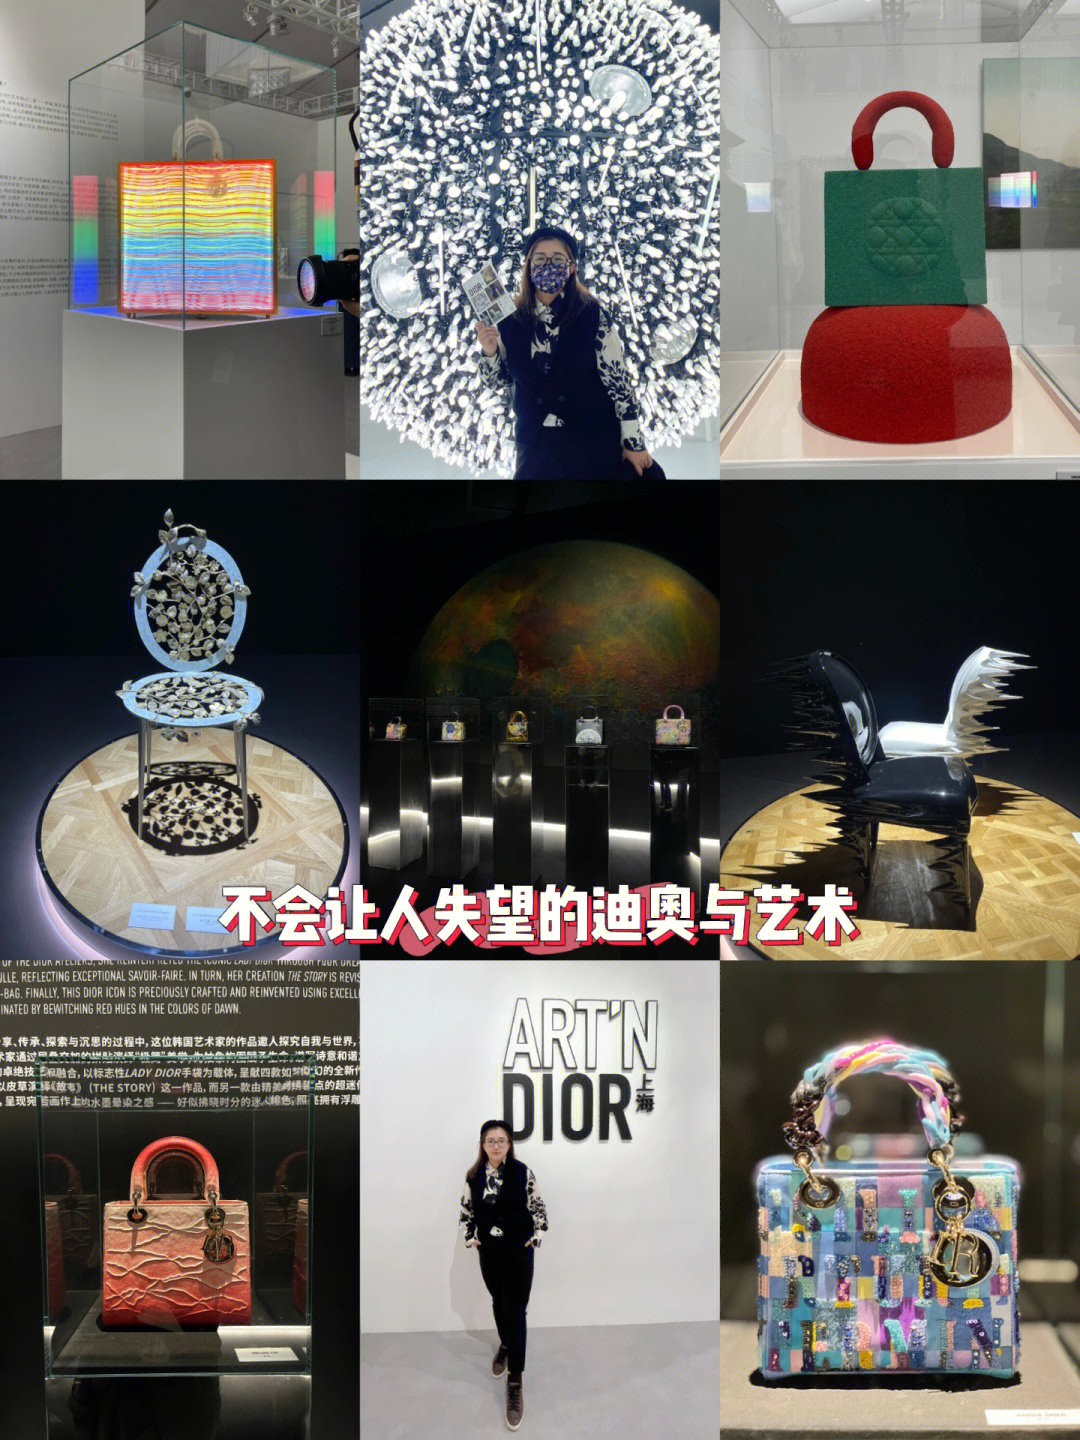 上海免费展不会让人失望的迪奥与艺术